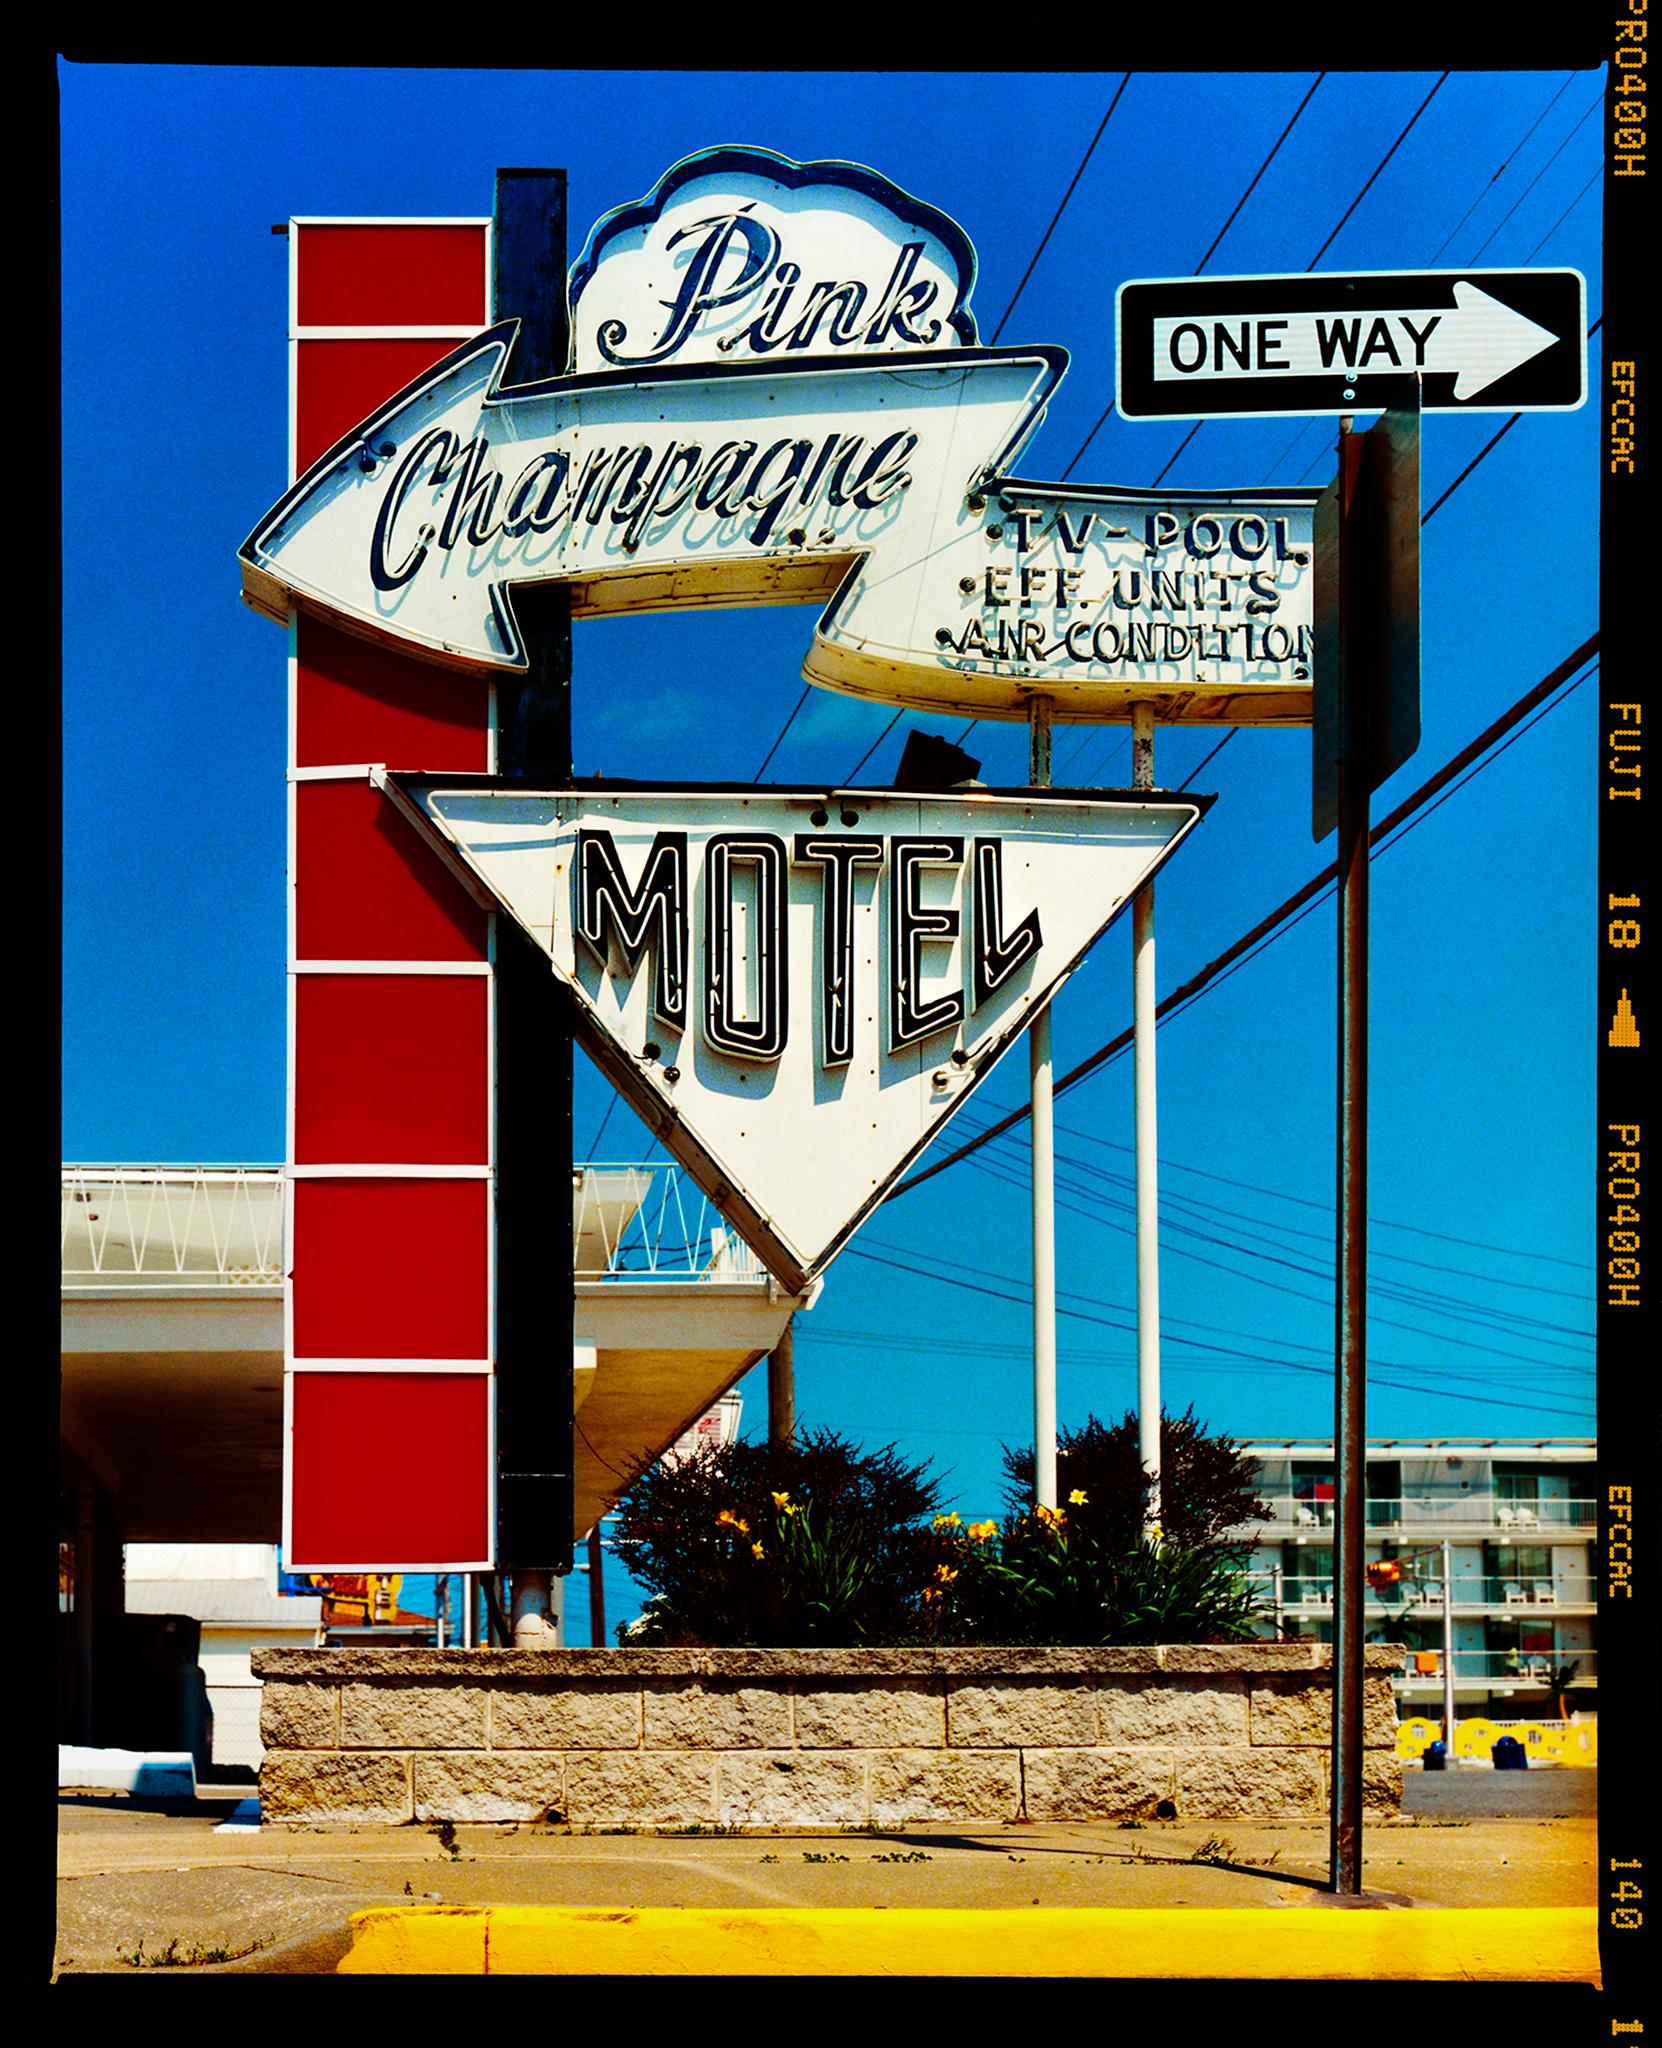 Color Photograph Richard Heeps - Motel Pink Champagne, Wildwood, New Jersey - photographie couleur d'un panneau d'enseigne Doo Wop